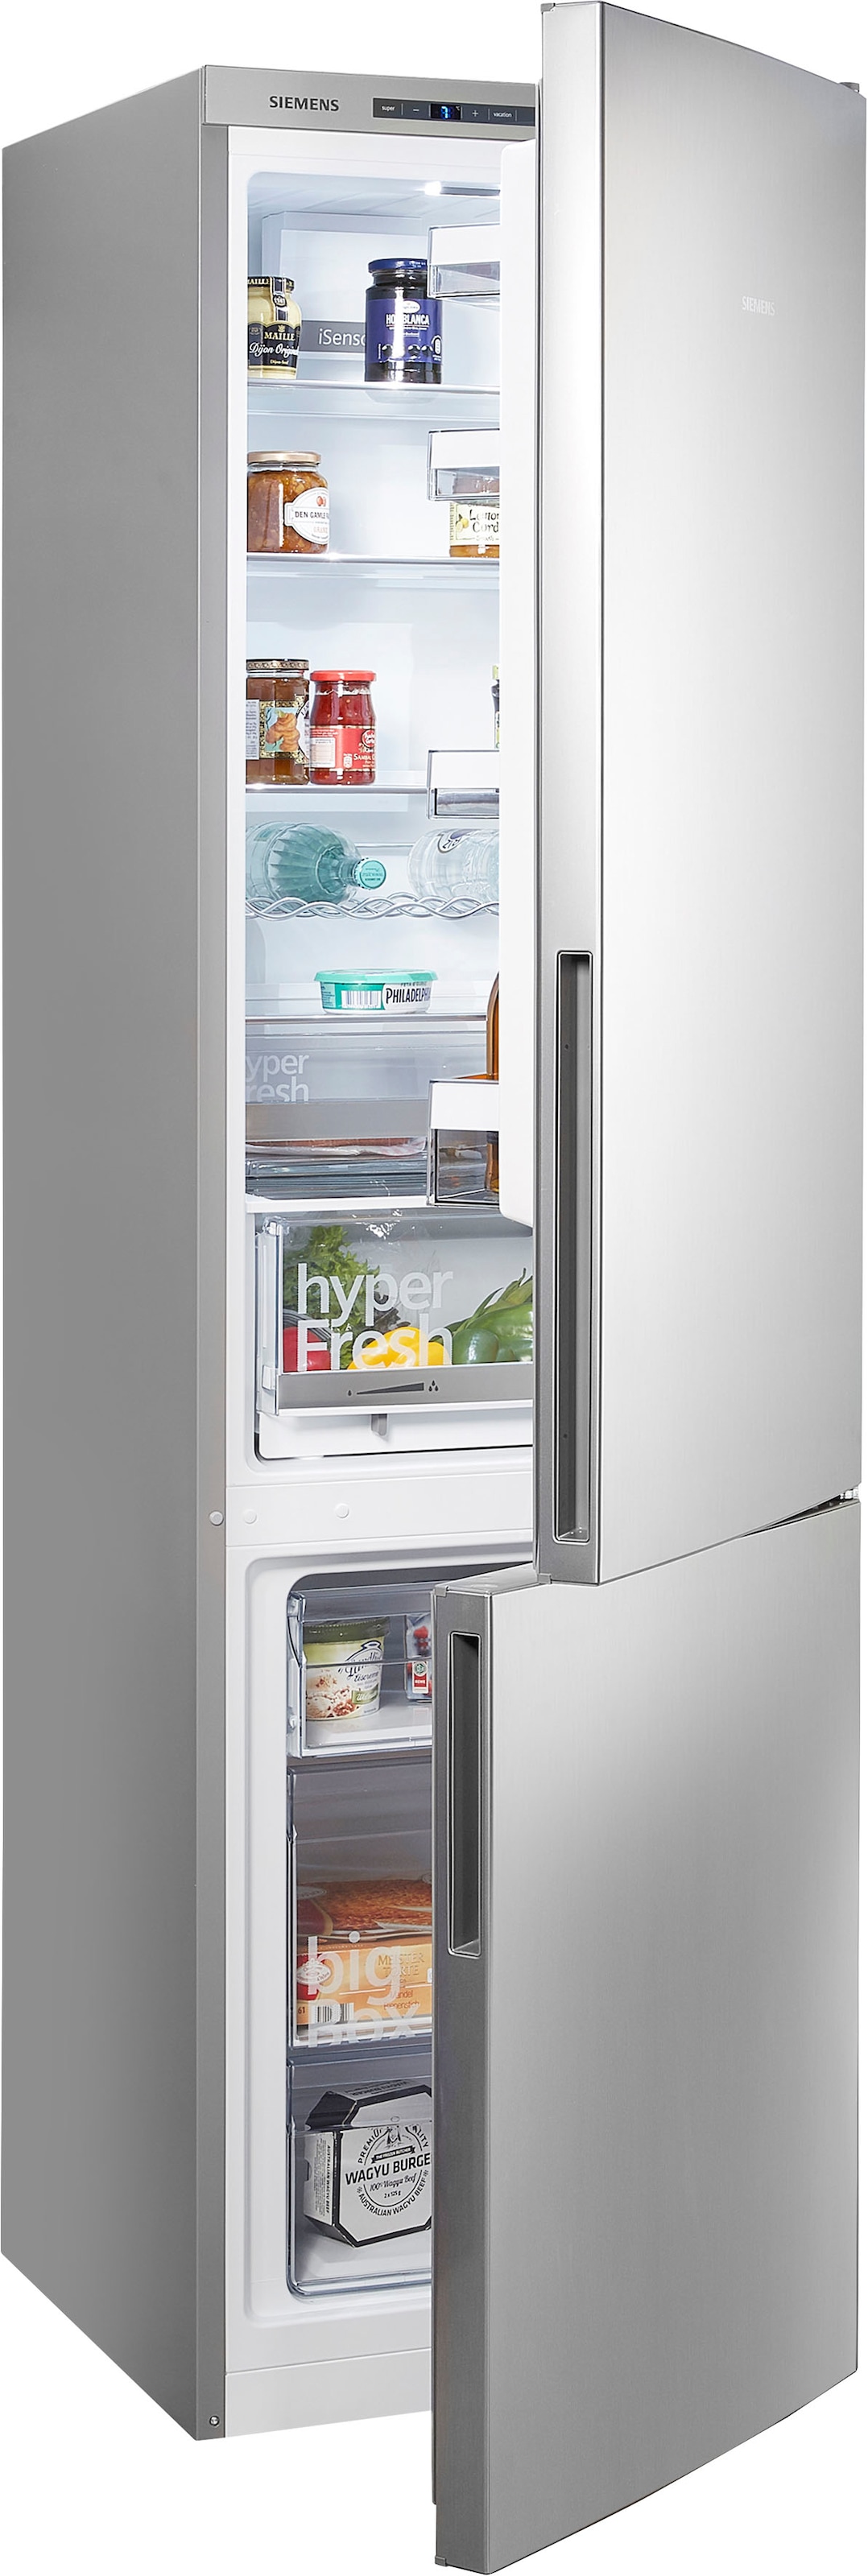 Siemens Kühlschränke mit flexibler Teilzahlung OTTO bei